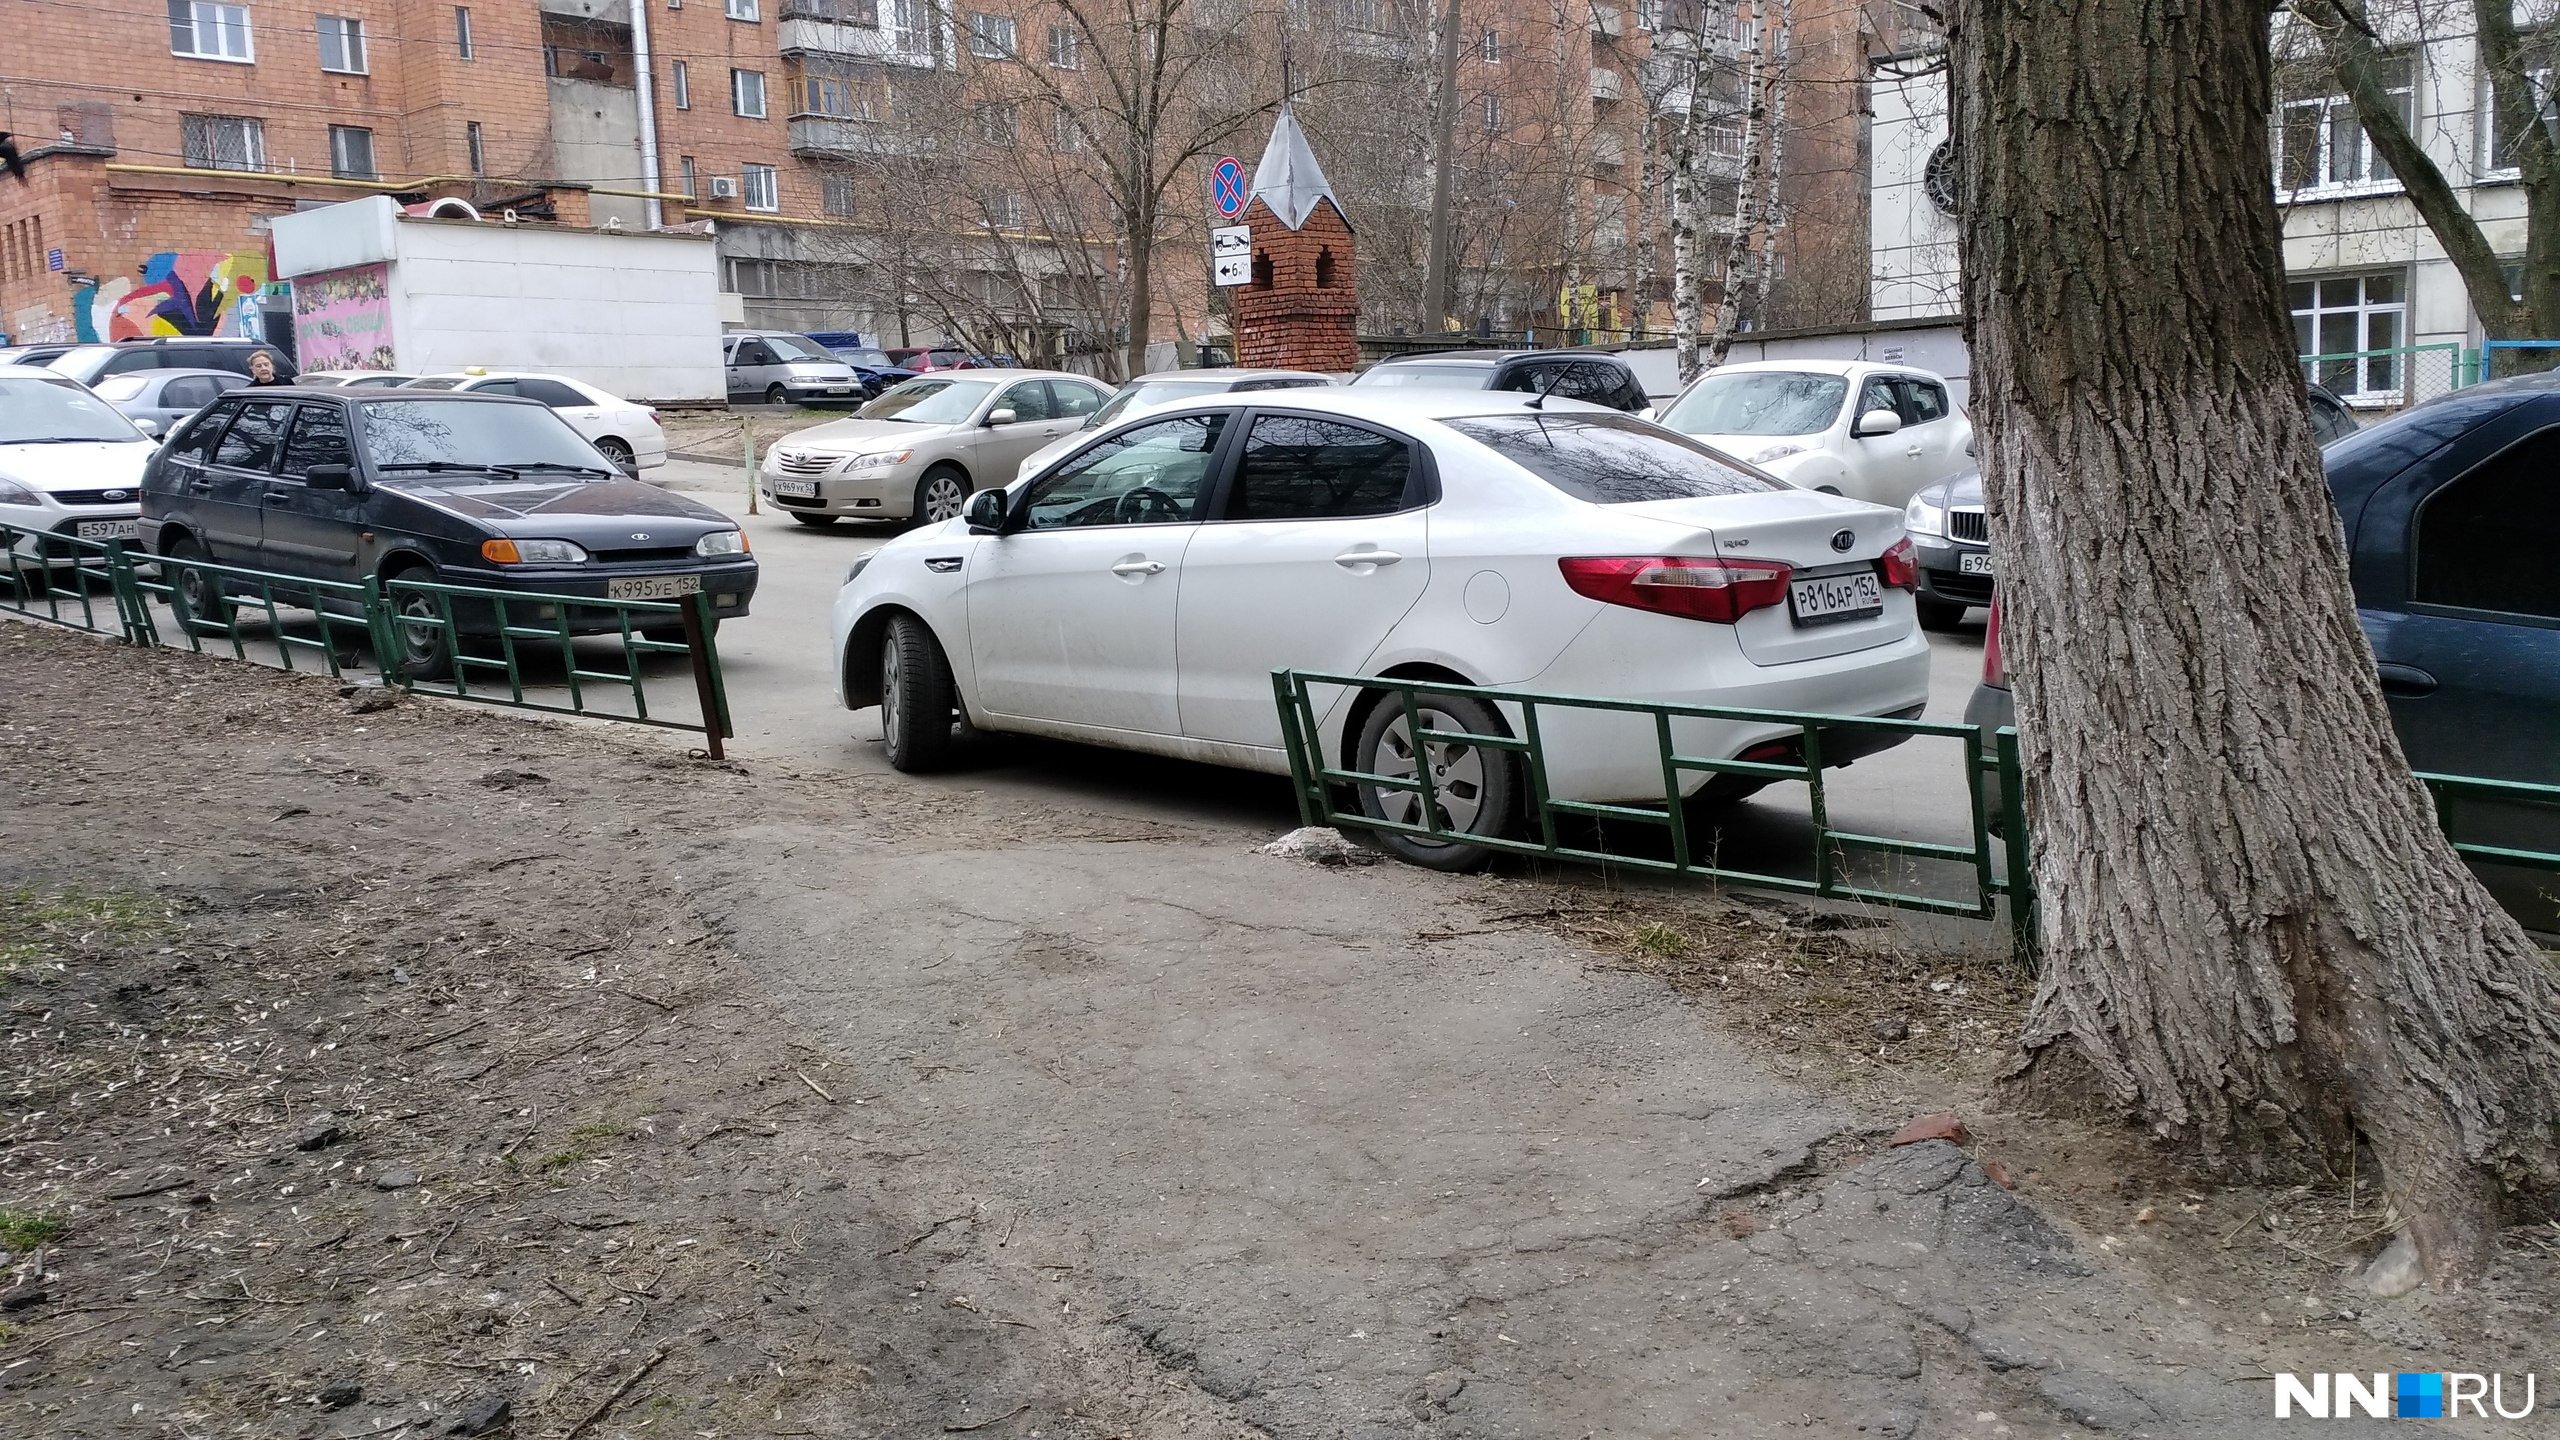 Автор снимка Дмитрий Лавров посетовал, что водитель «не особо думает о пешеходах»